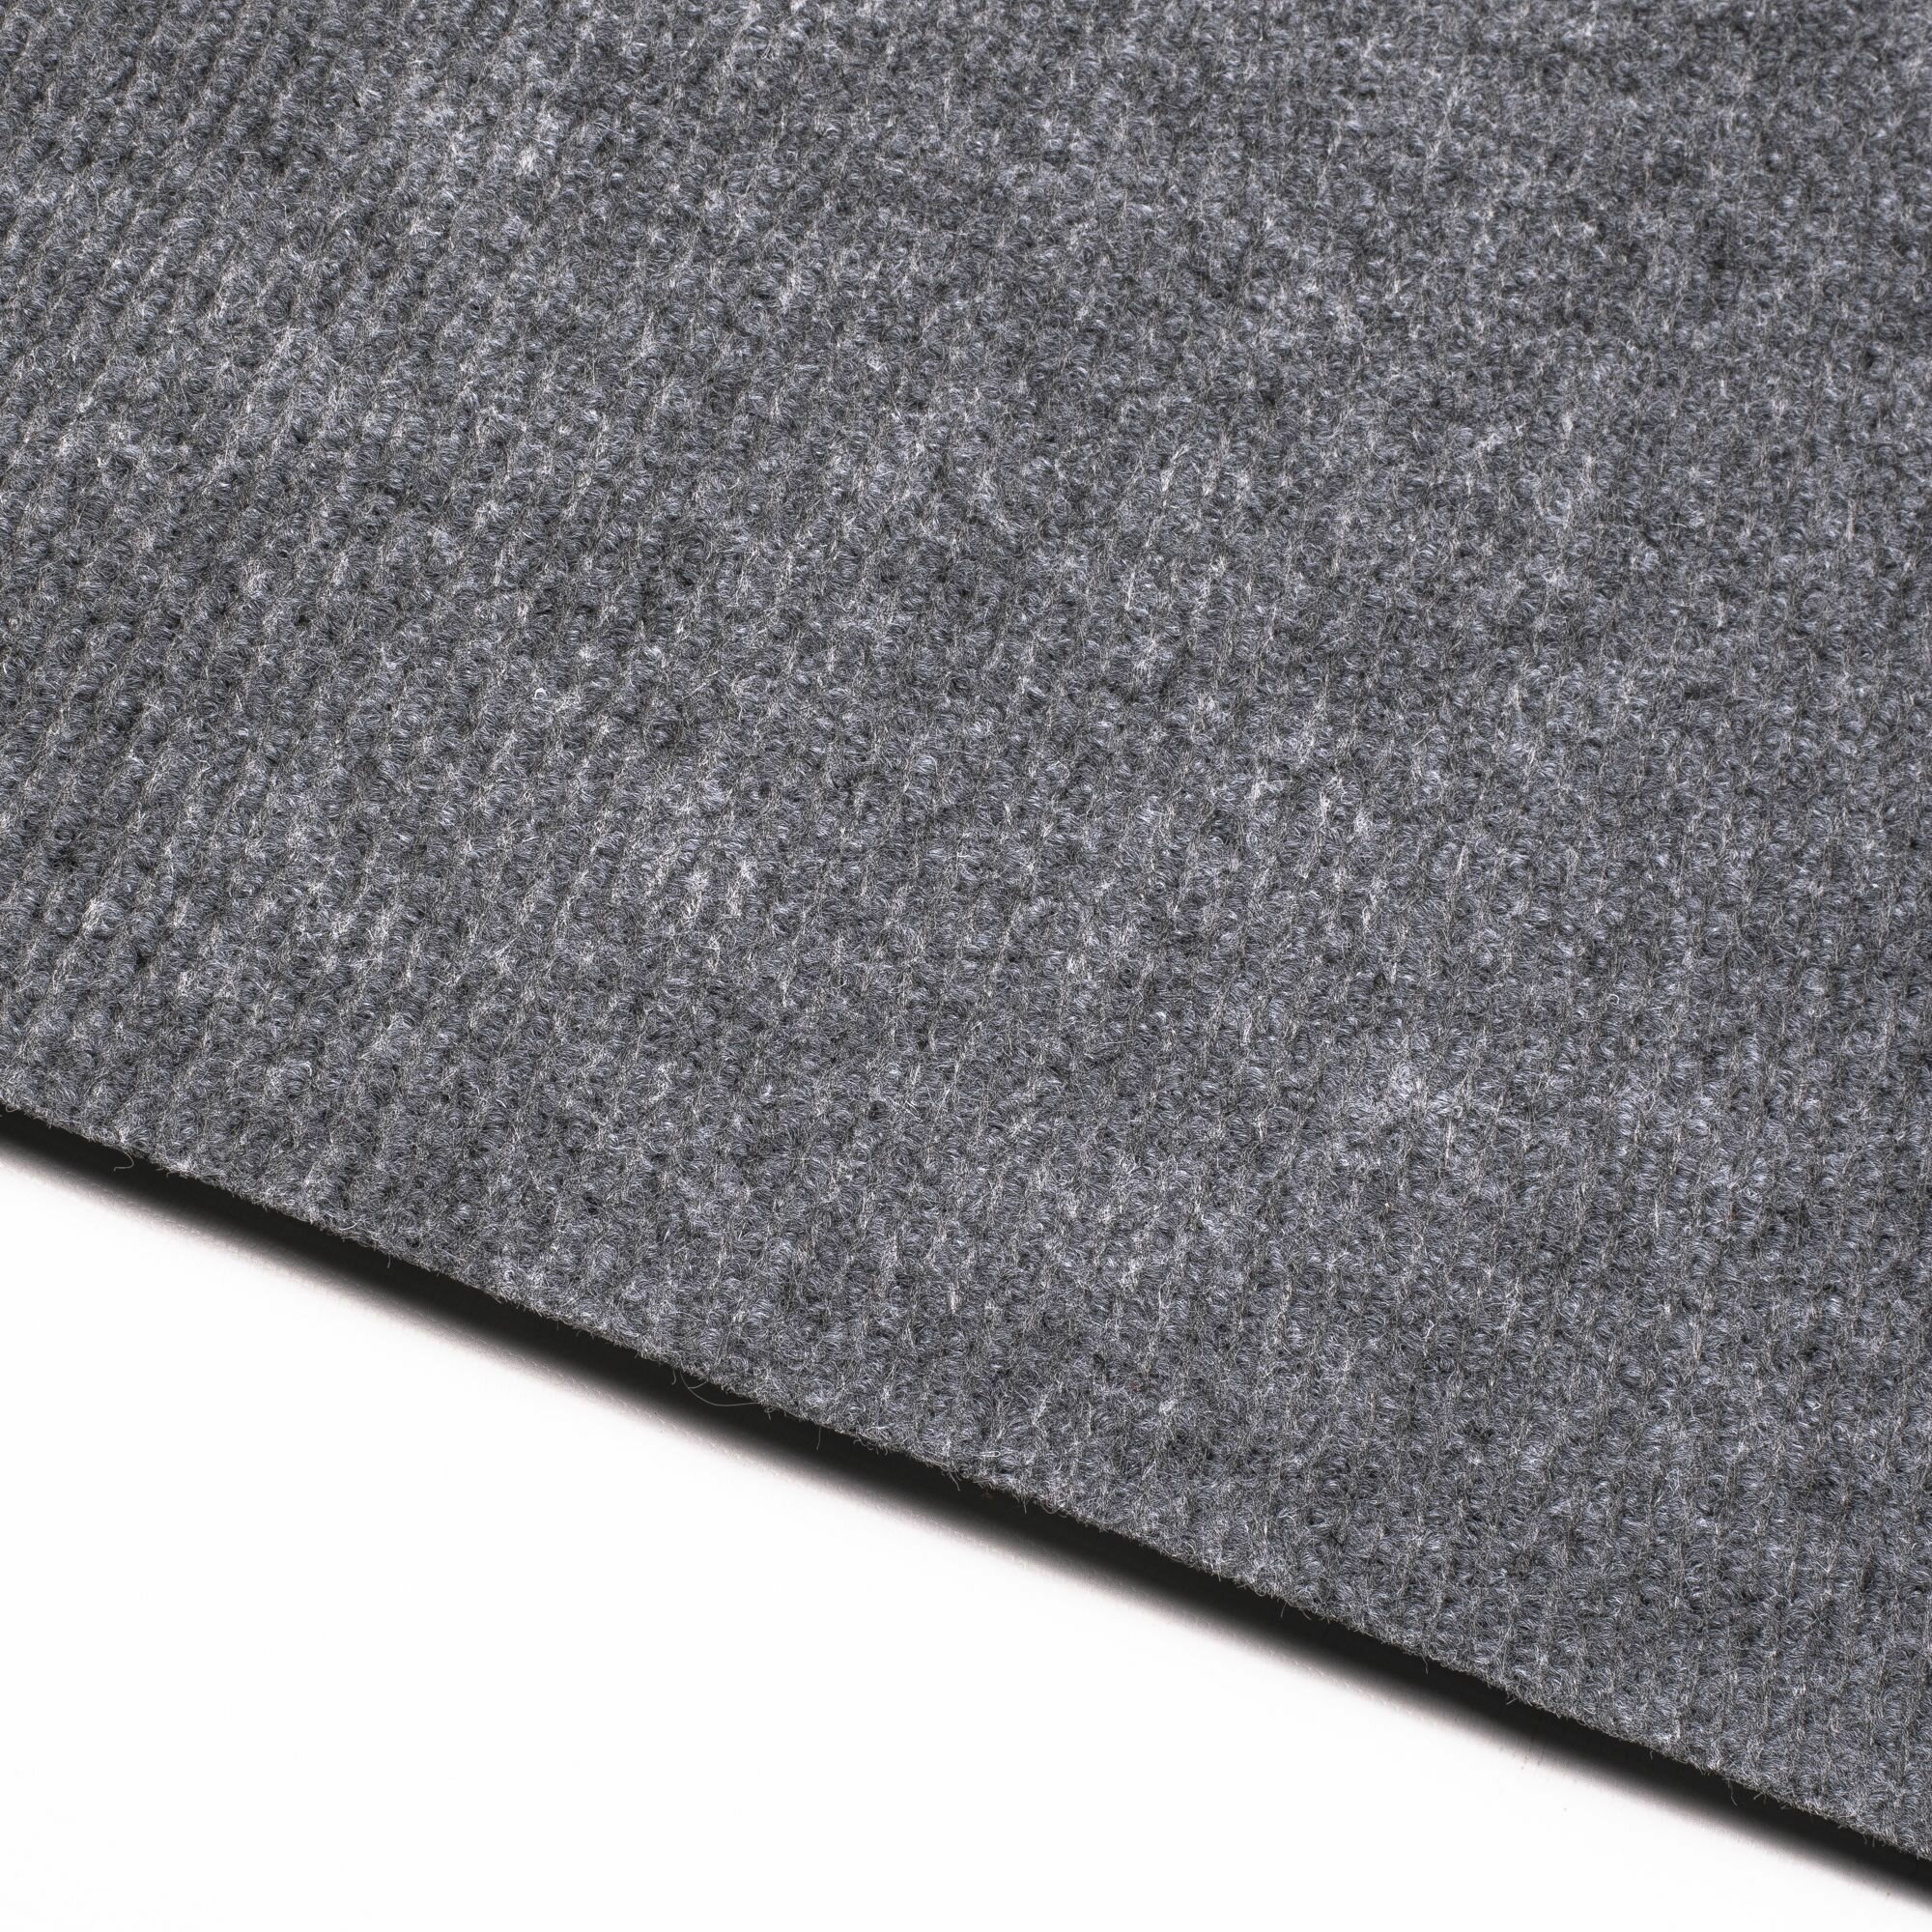 Выставочный ковролин метражом 2х5 м LEVMA Carpet серый